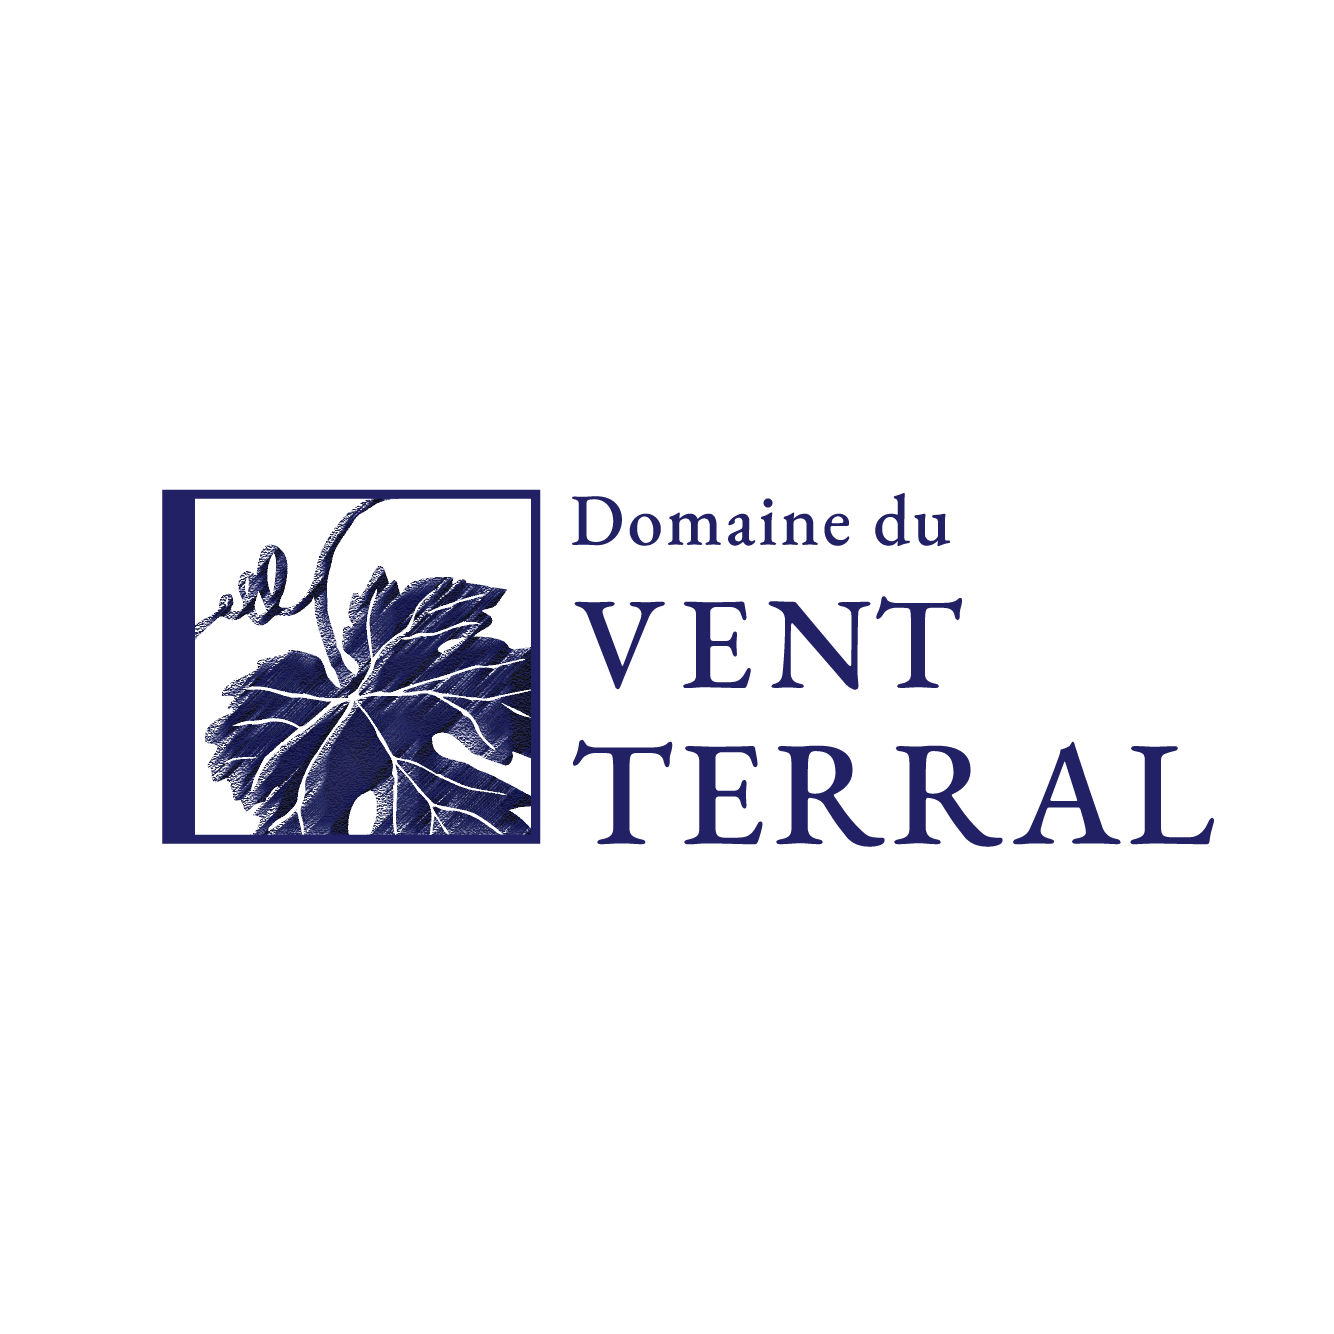 Domaine du VENT TERRAL